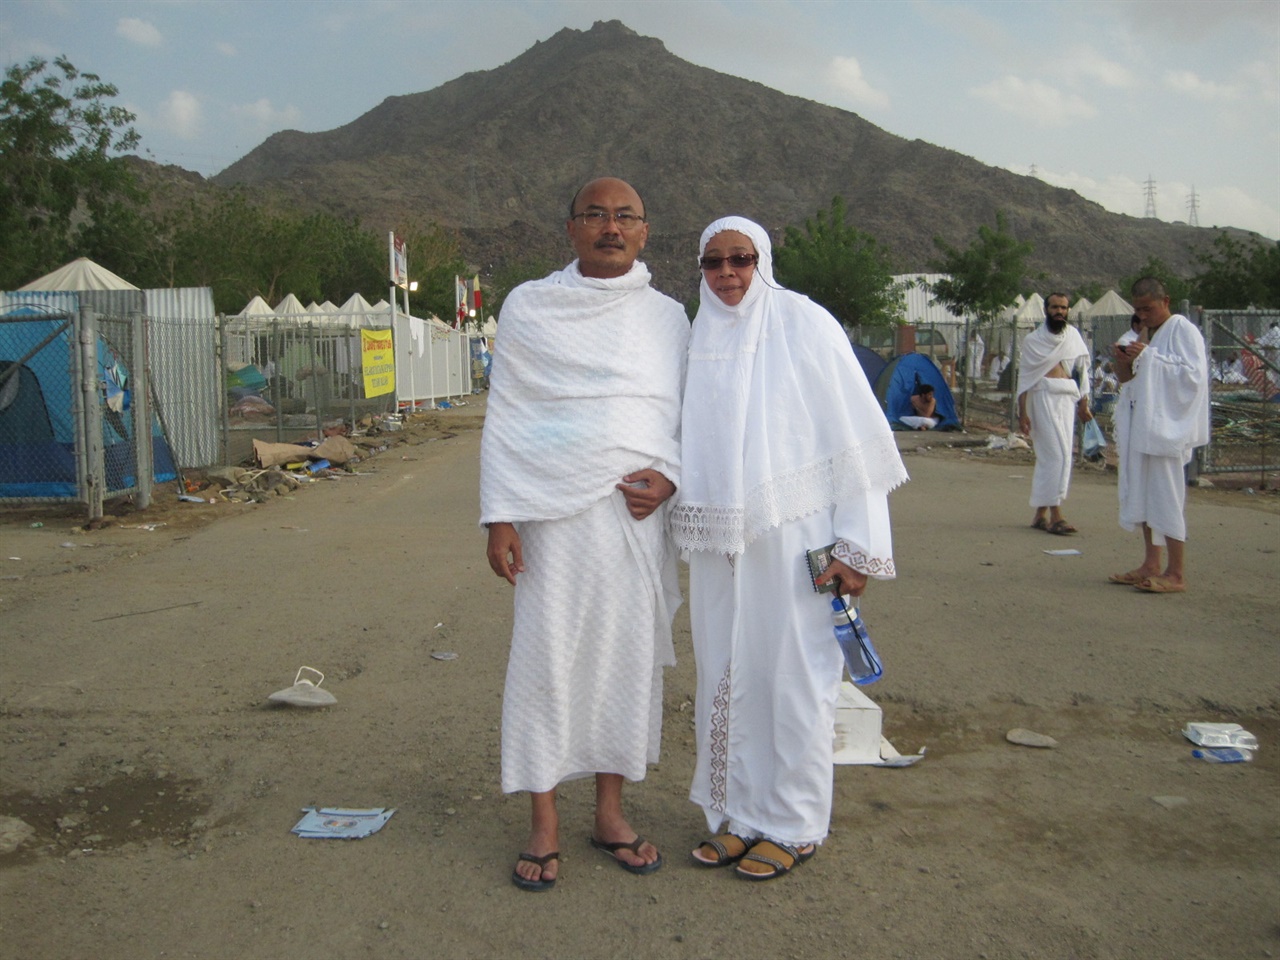 하즈 순례자 부부가 이흐람(흰 남녀 순례자 의복)를 입고 미나, 텐트 도시에 서 있다. 